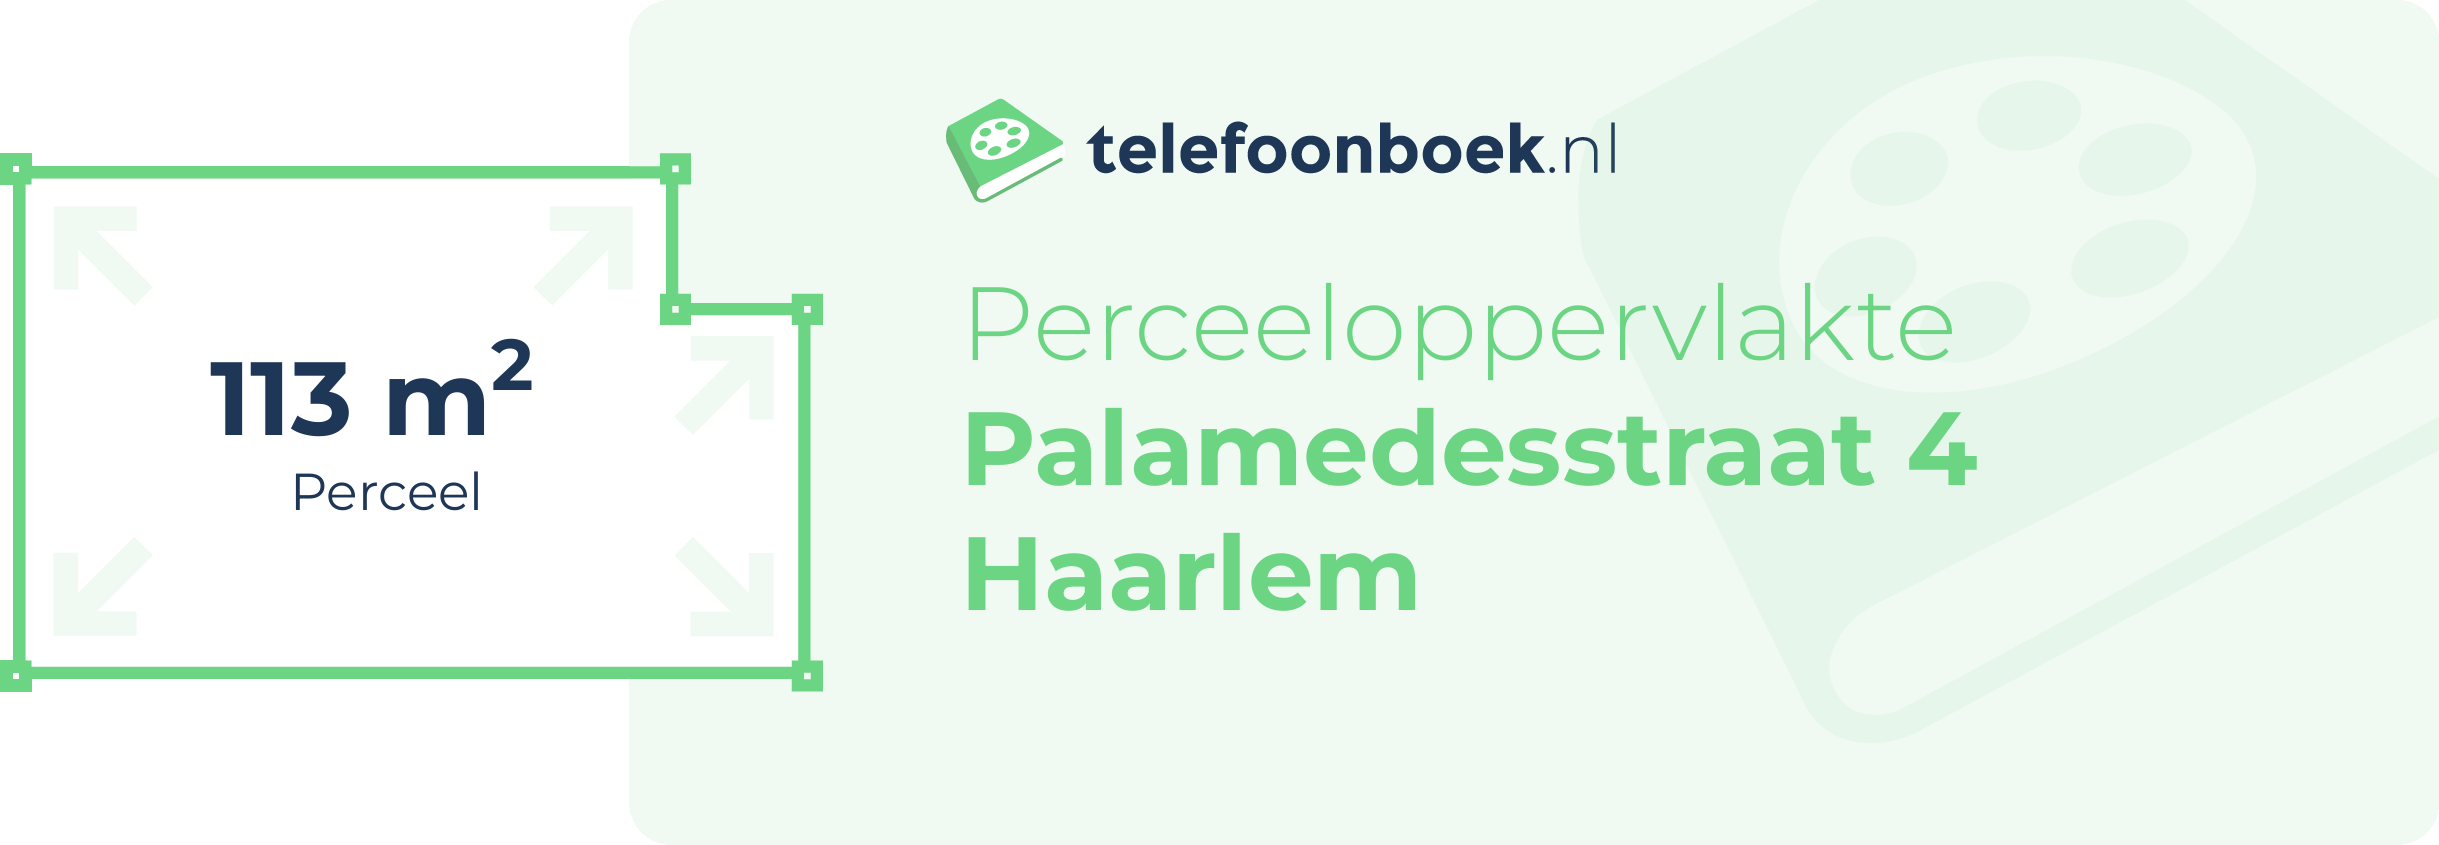 Perceeloppervlakte Palamedesstraat 4 Haarlem